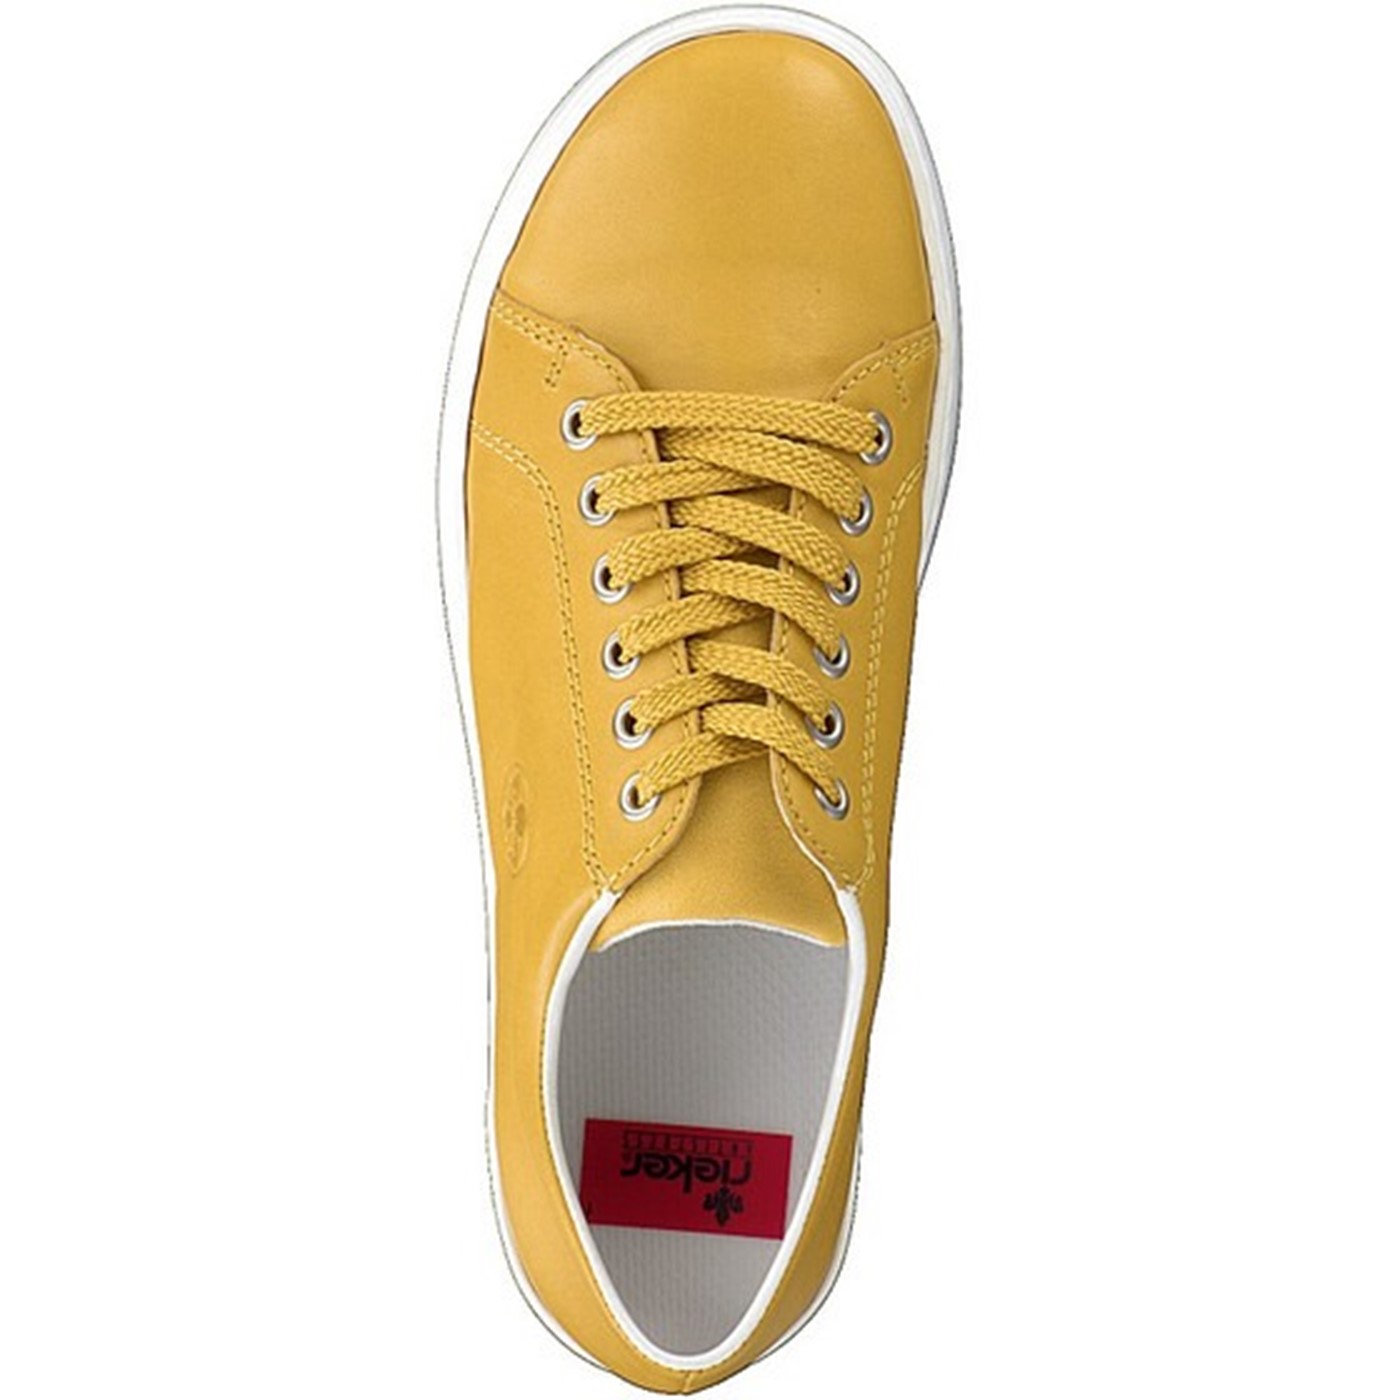 -women-lace-up-shoe-yellow-1.jpg?anchor=center&mode=crop&width=1400&height=1400&rnd=132246896880000000